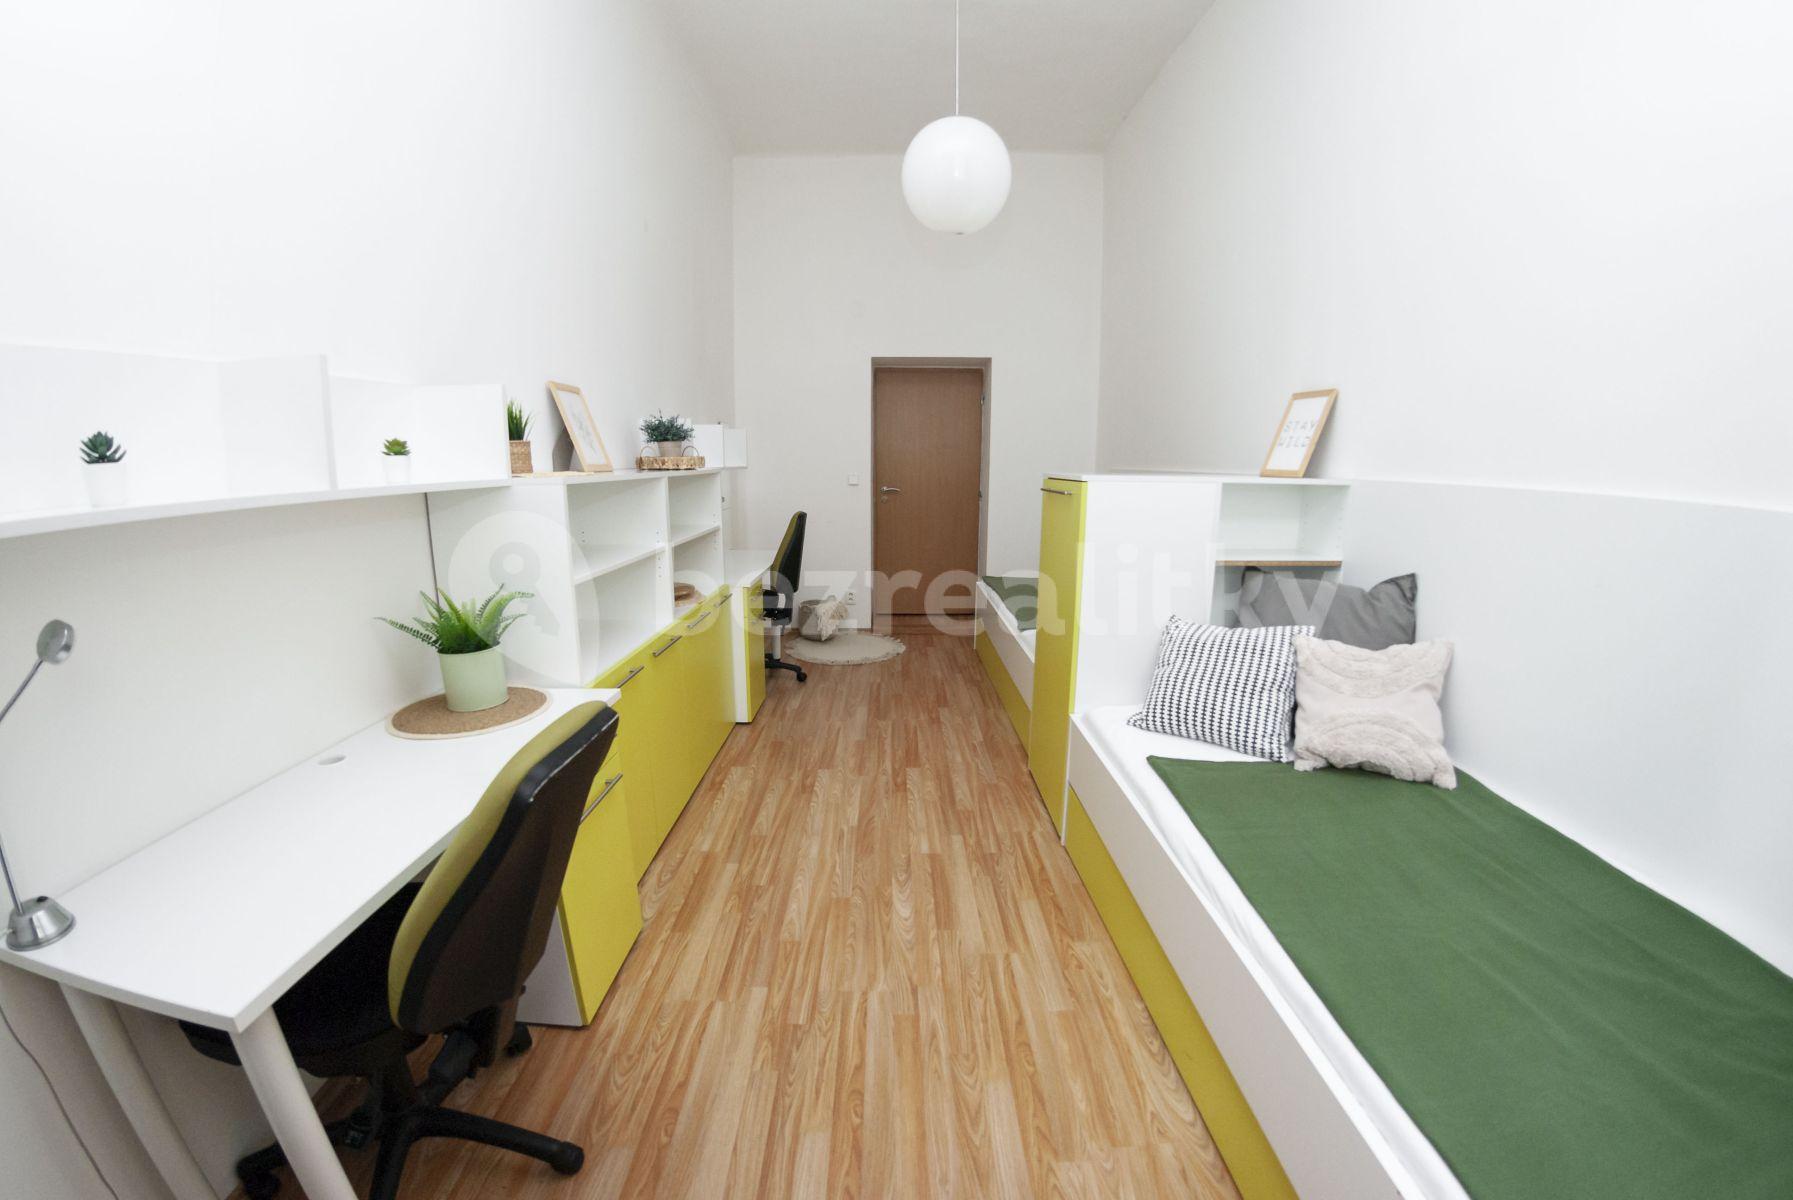 3 bedroom flat to rent, 55 m², Běhounská, Brno, Jihomoravský Region